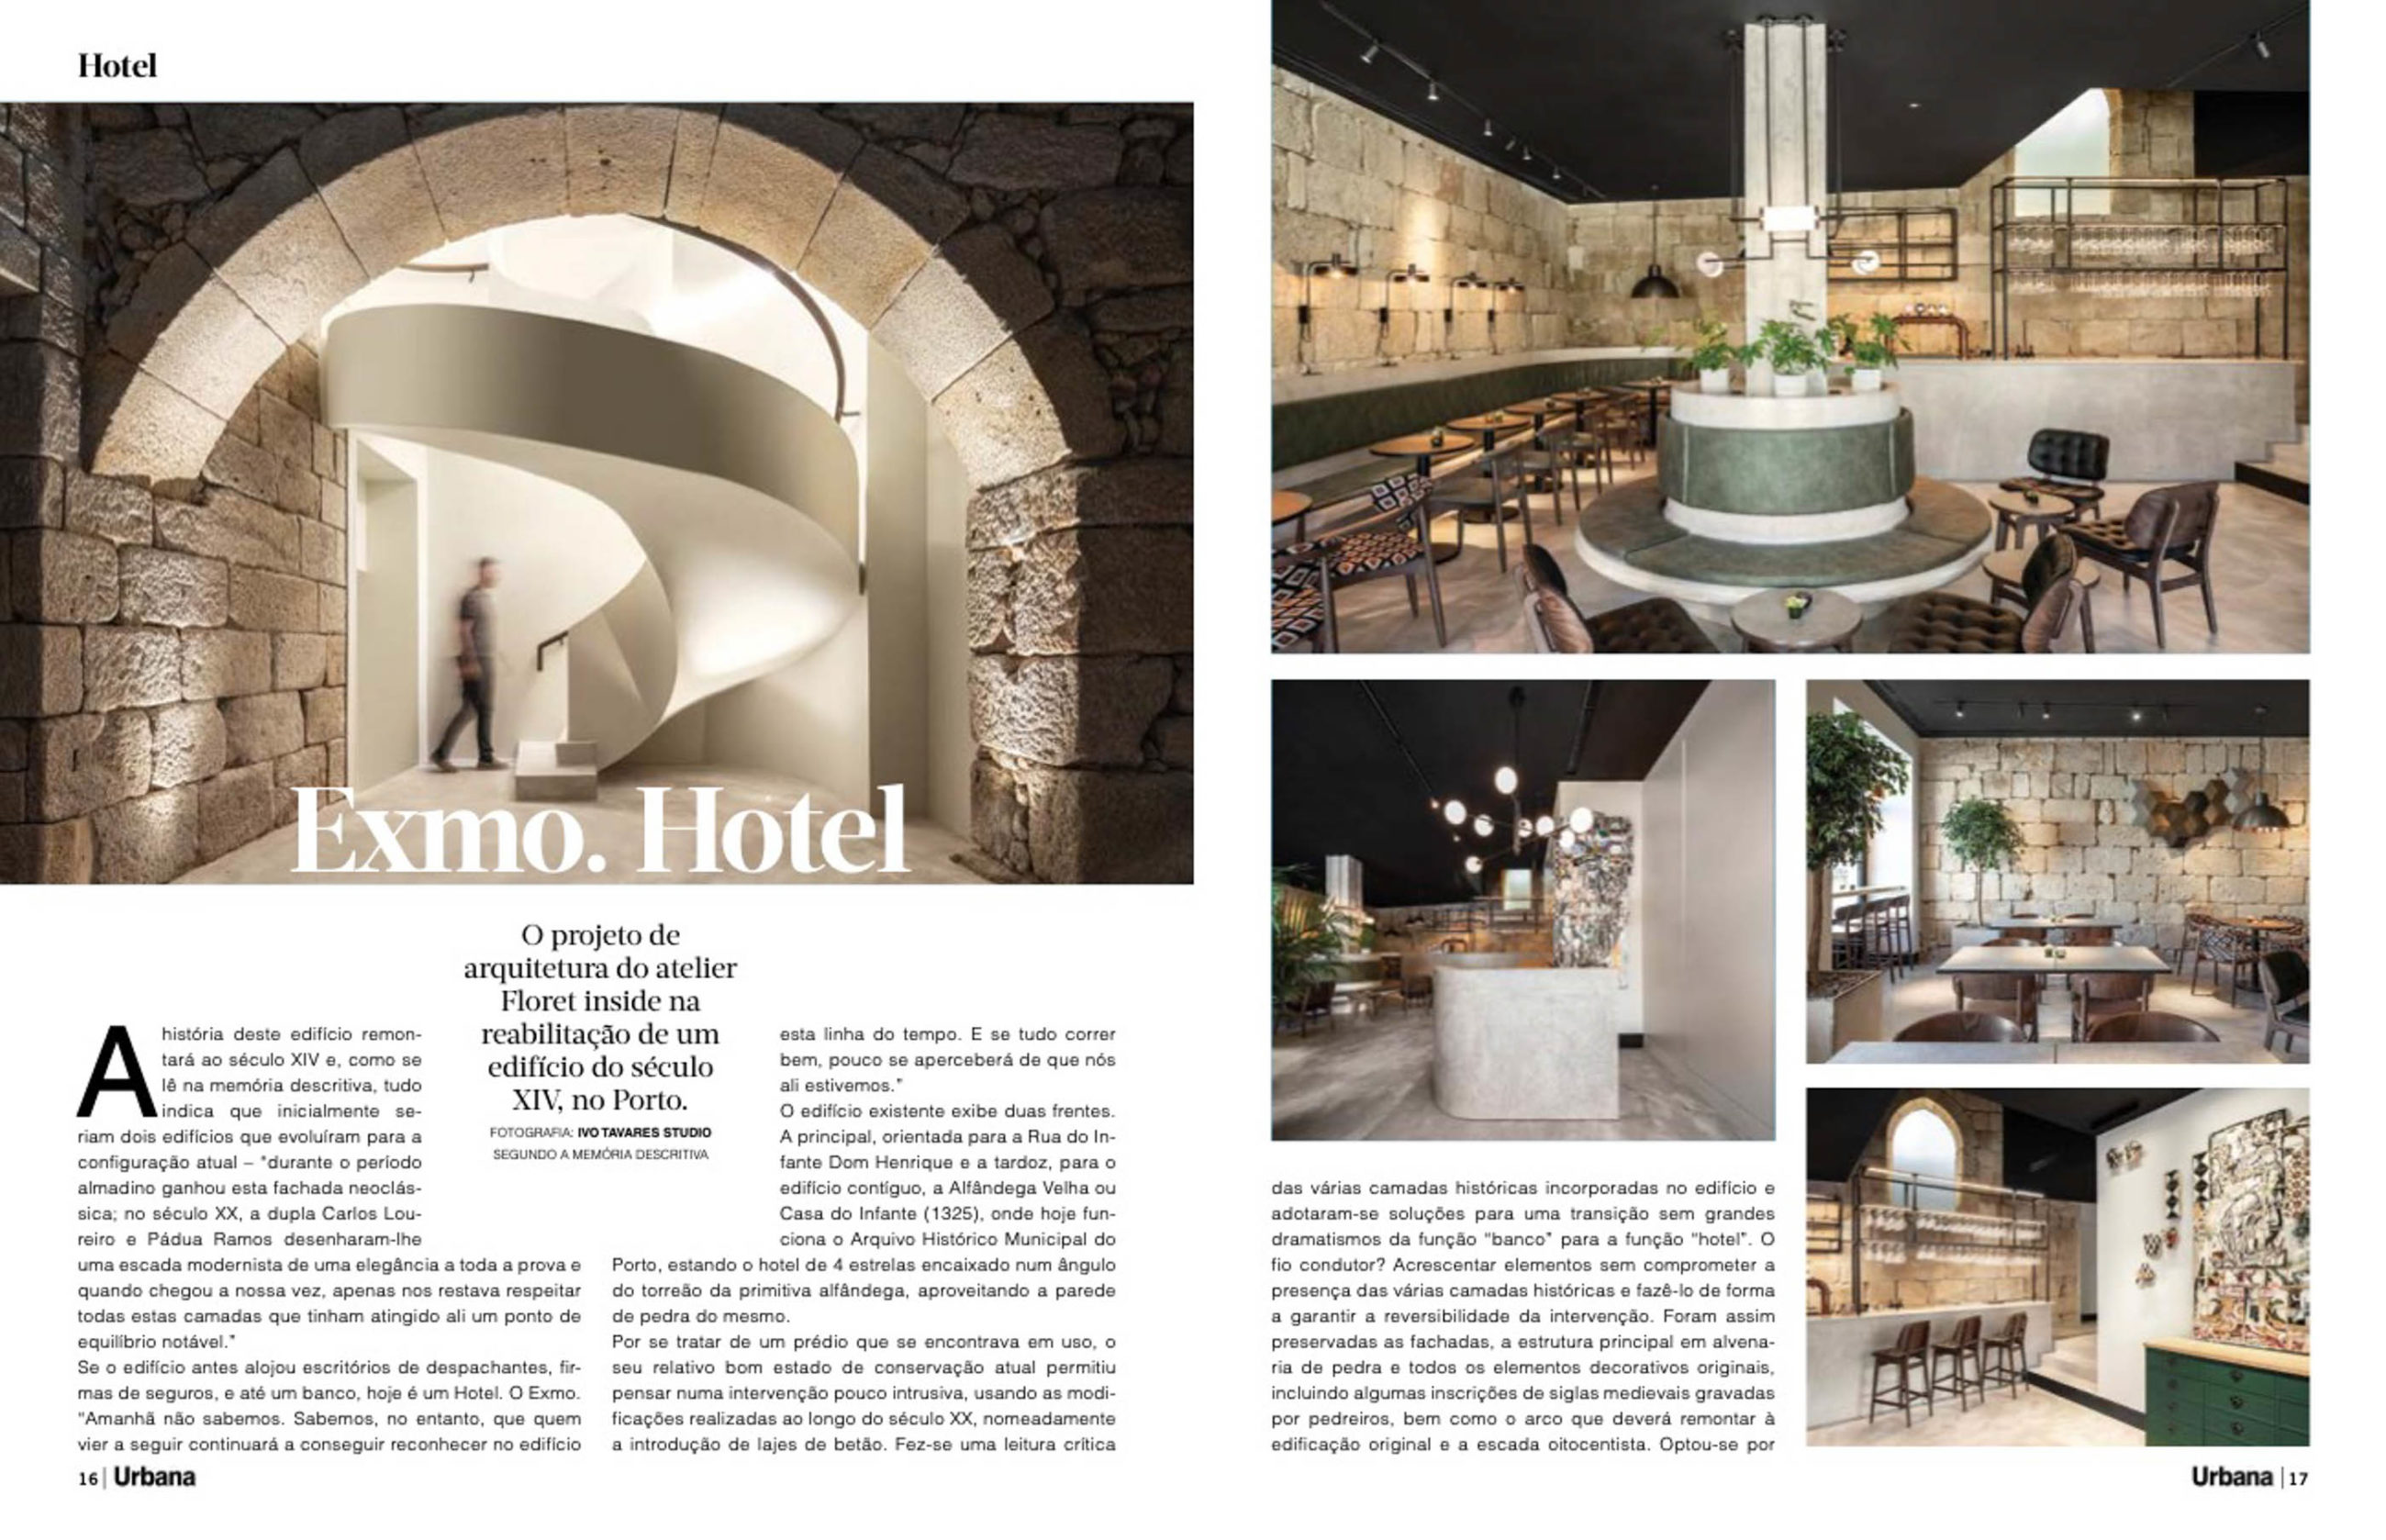 Exmo Hotel no Porto do atelier Floret Arquitectura publicado na revista Urbana com fotografia de arquitetura Ivo Tavares Studio